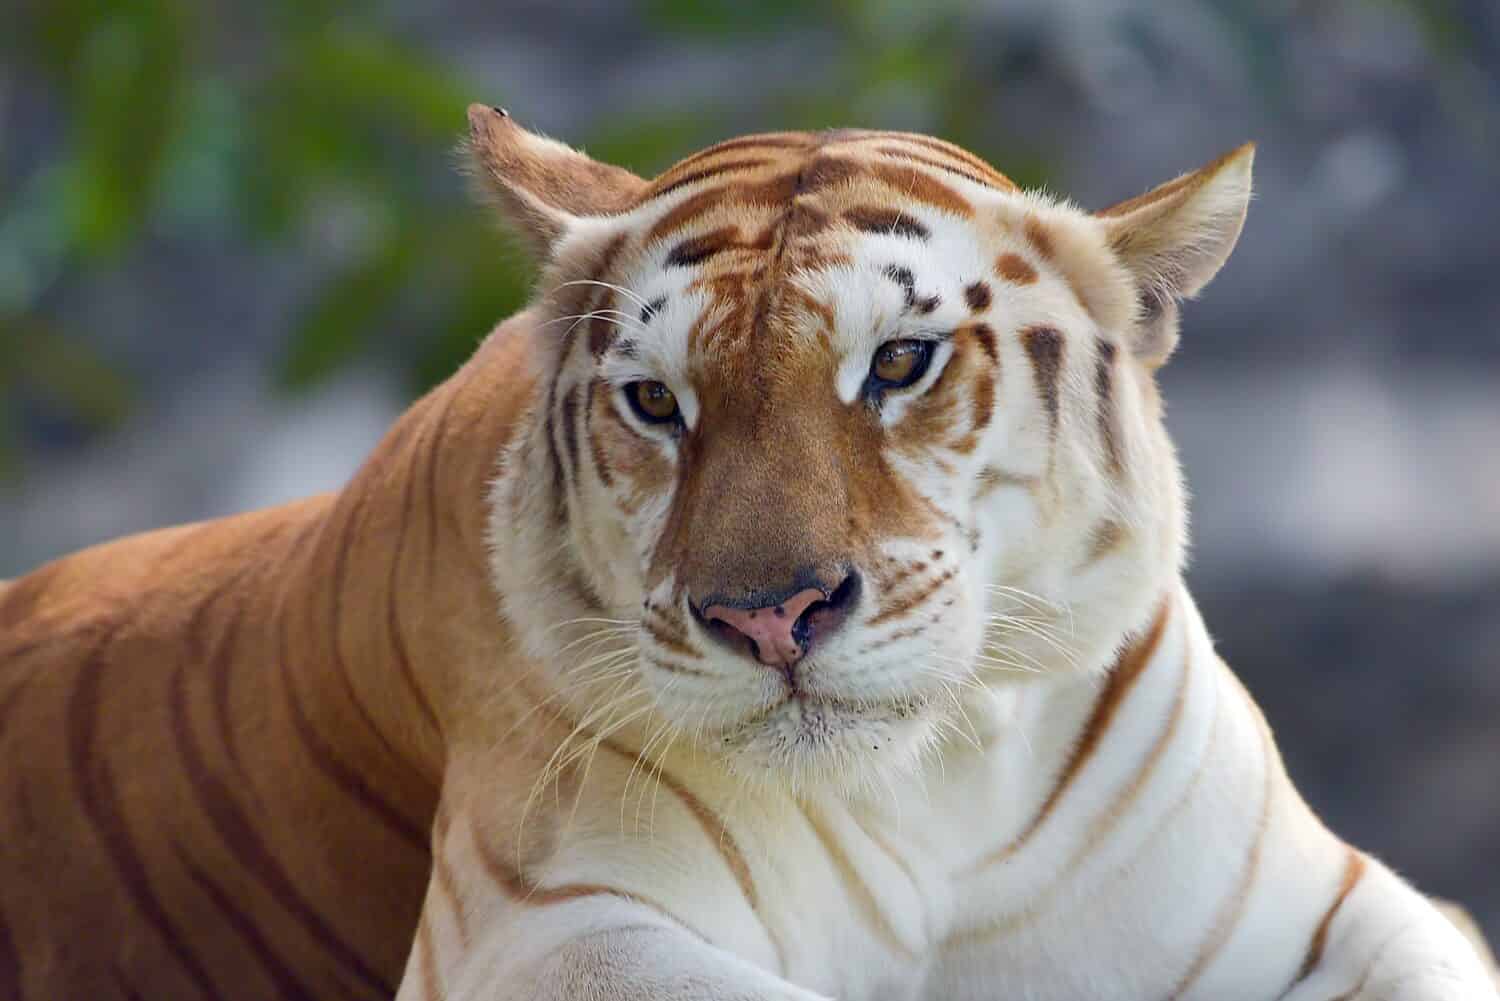 Rare golden tiger in their environment